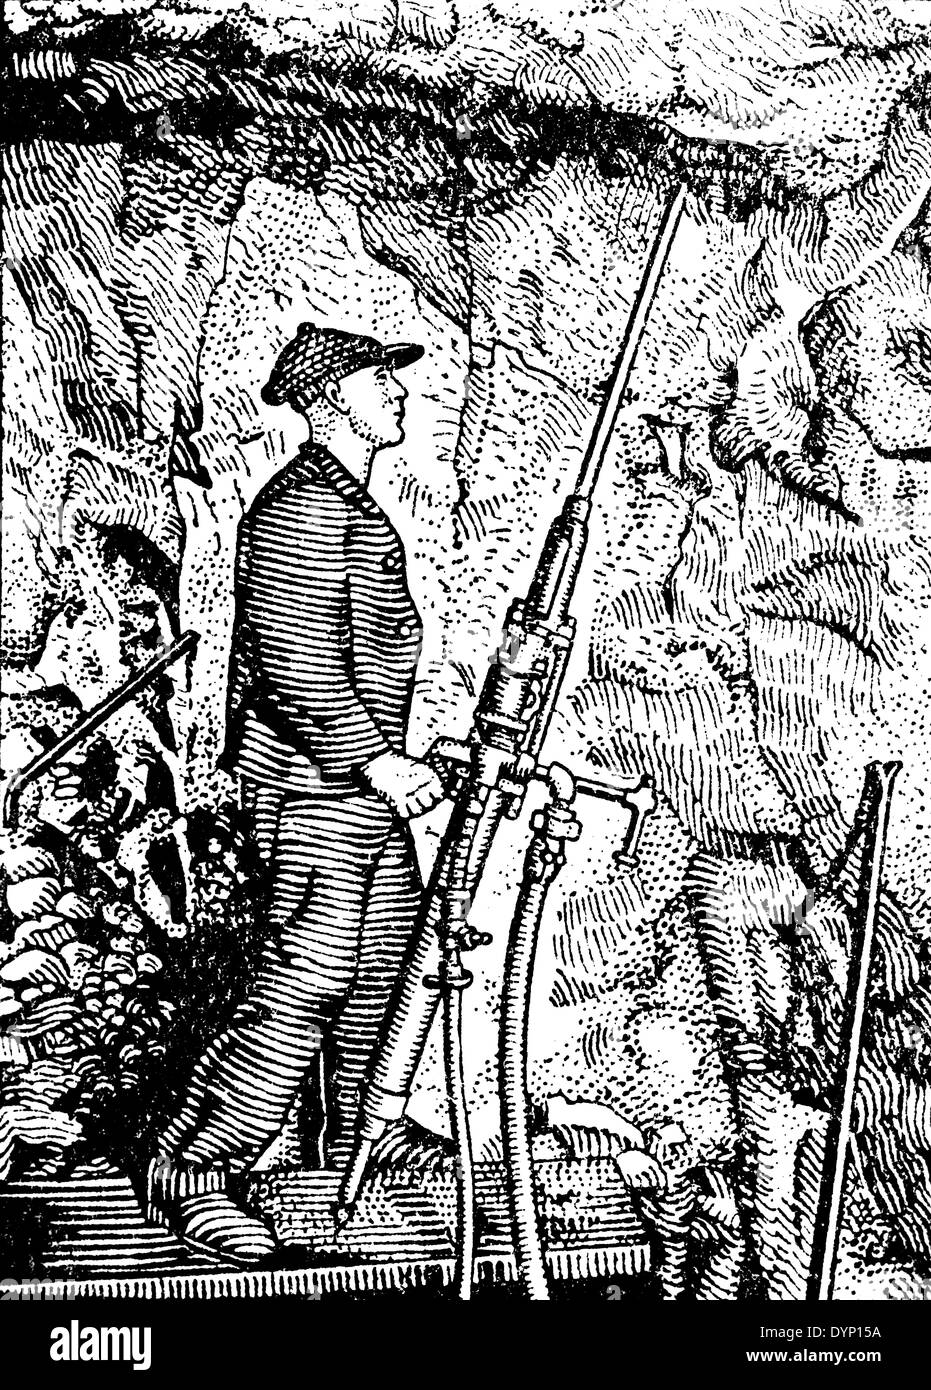 Les travailleurs de mine, illustration de l'Encyclopédie Soviétique, 1929 Banque D'Images